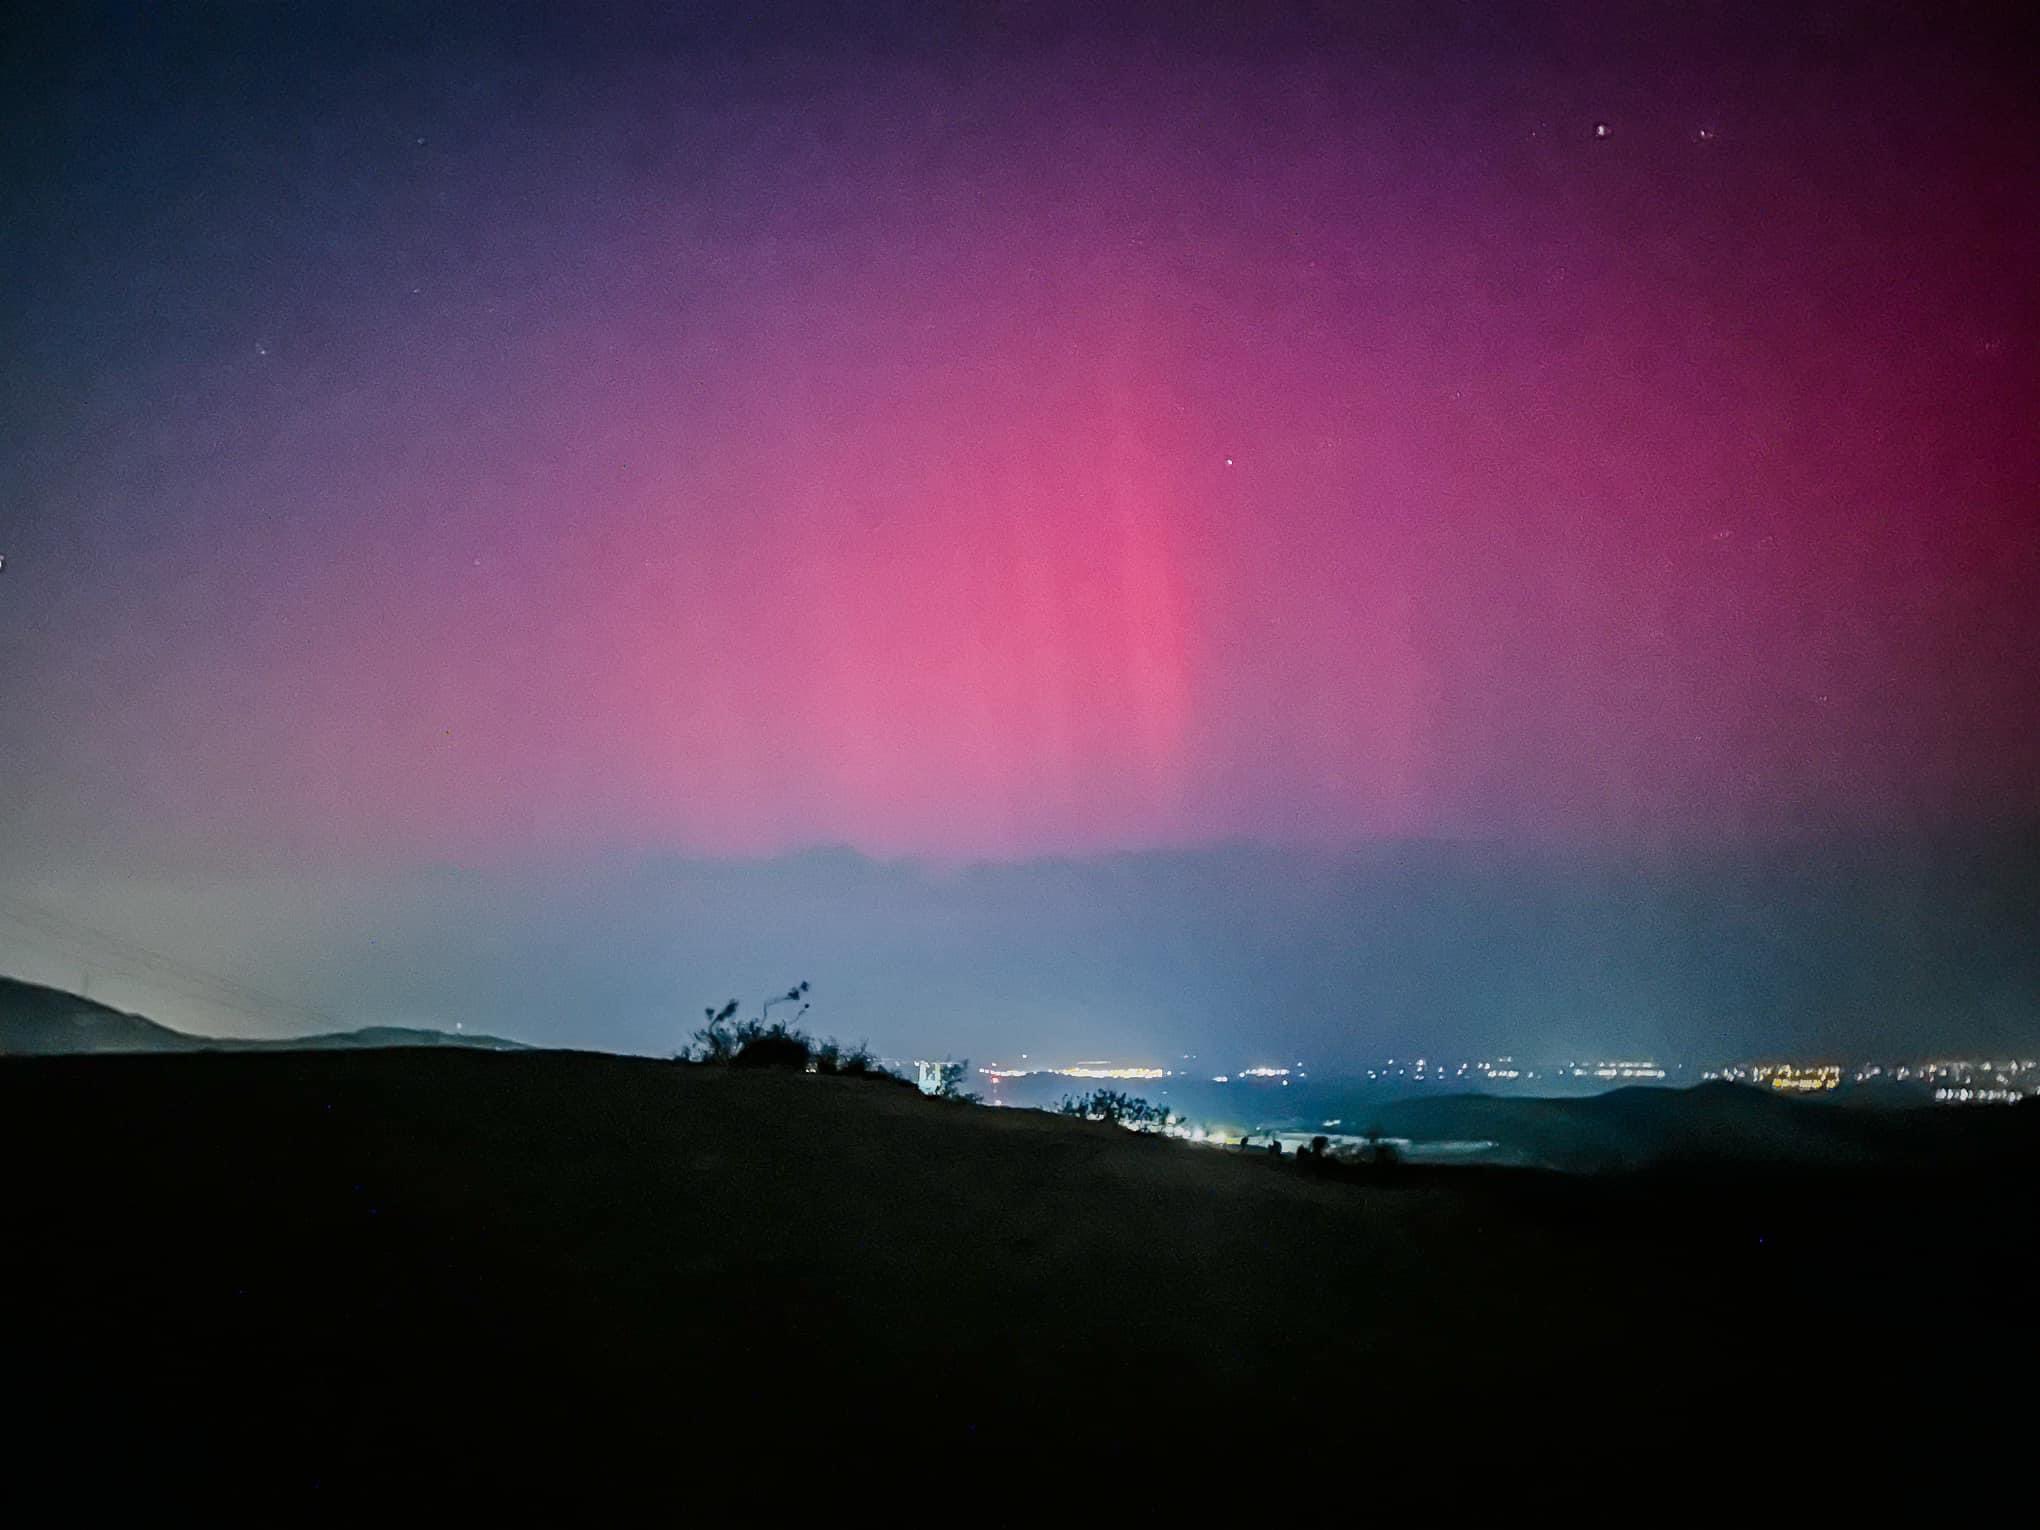 auroras boreales en méxico tips cámara